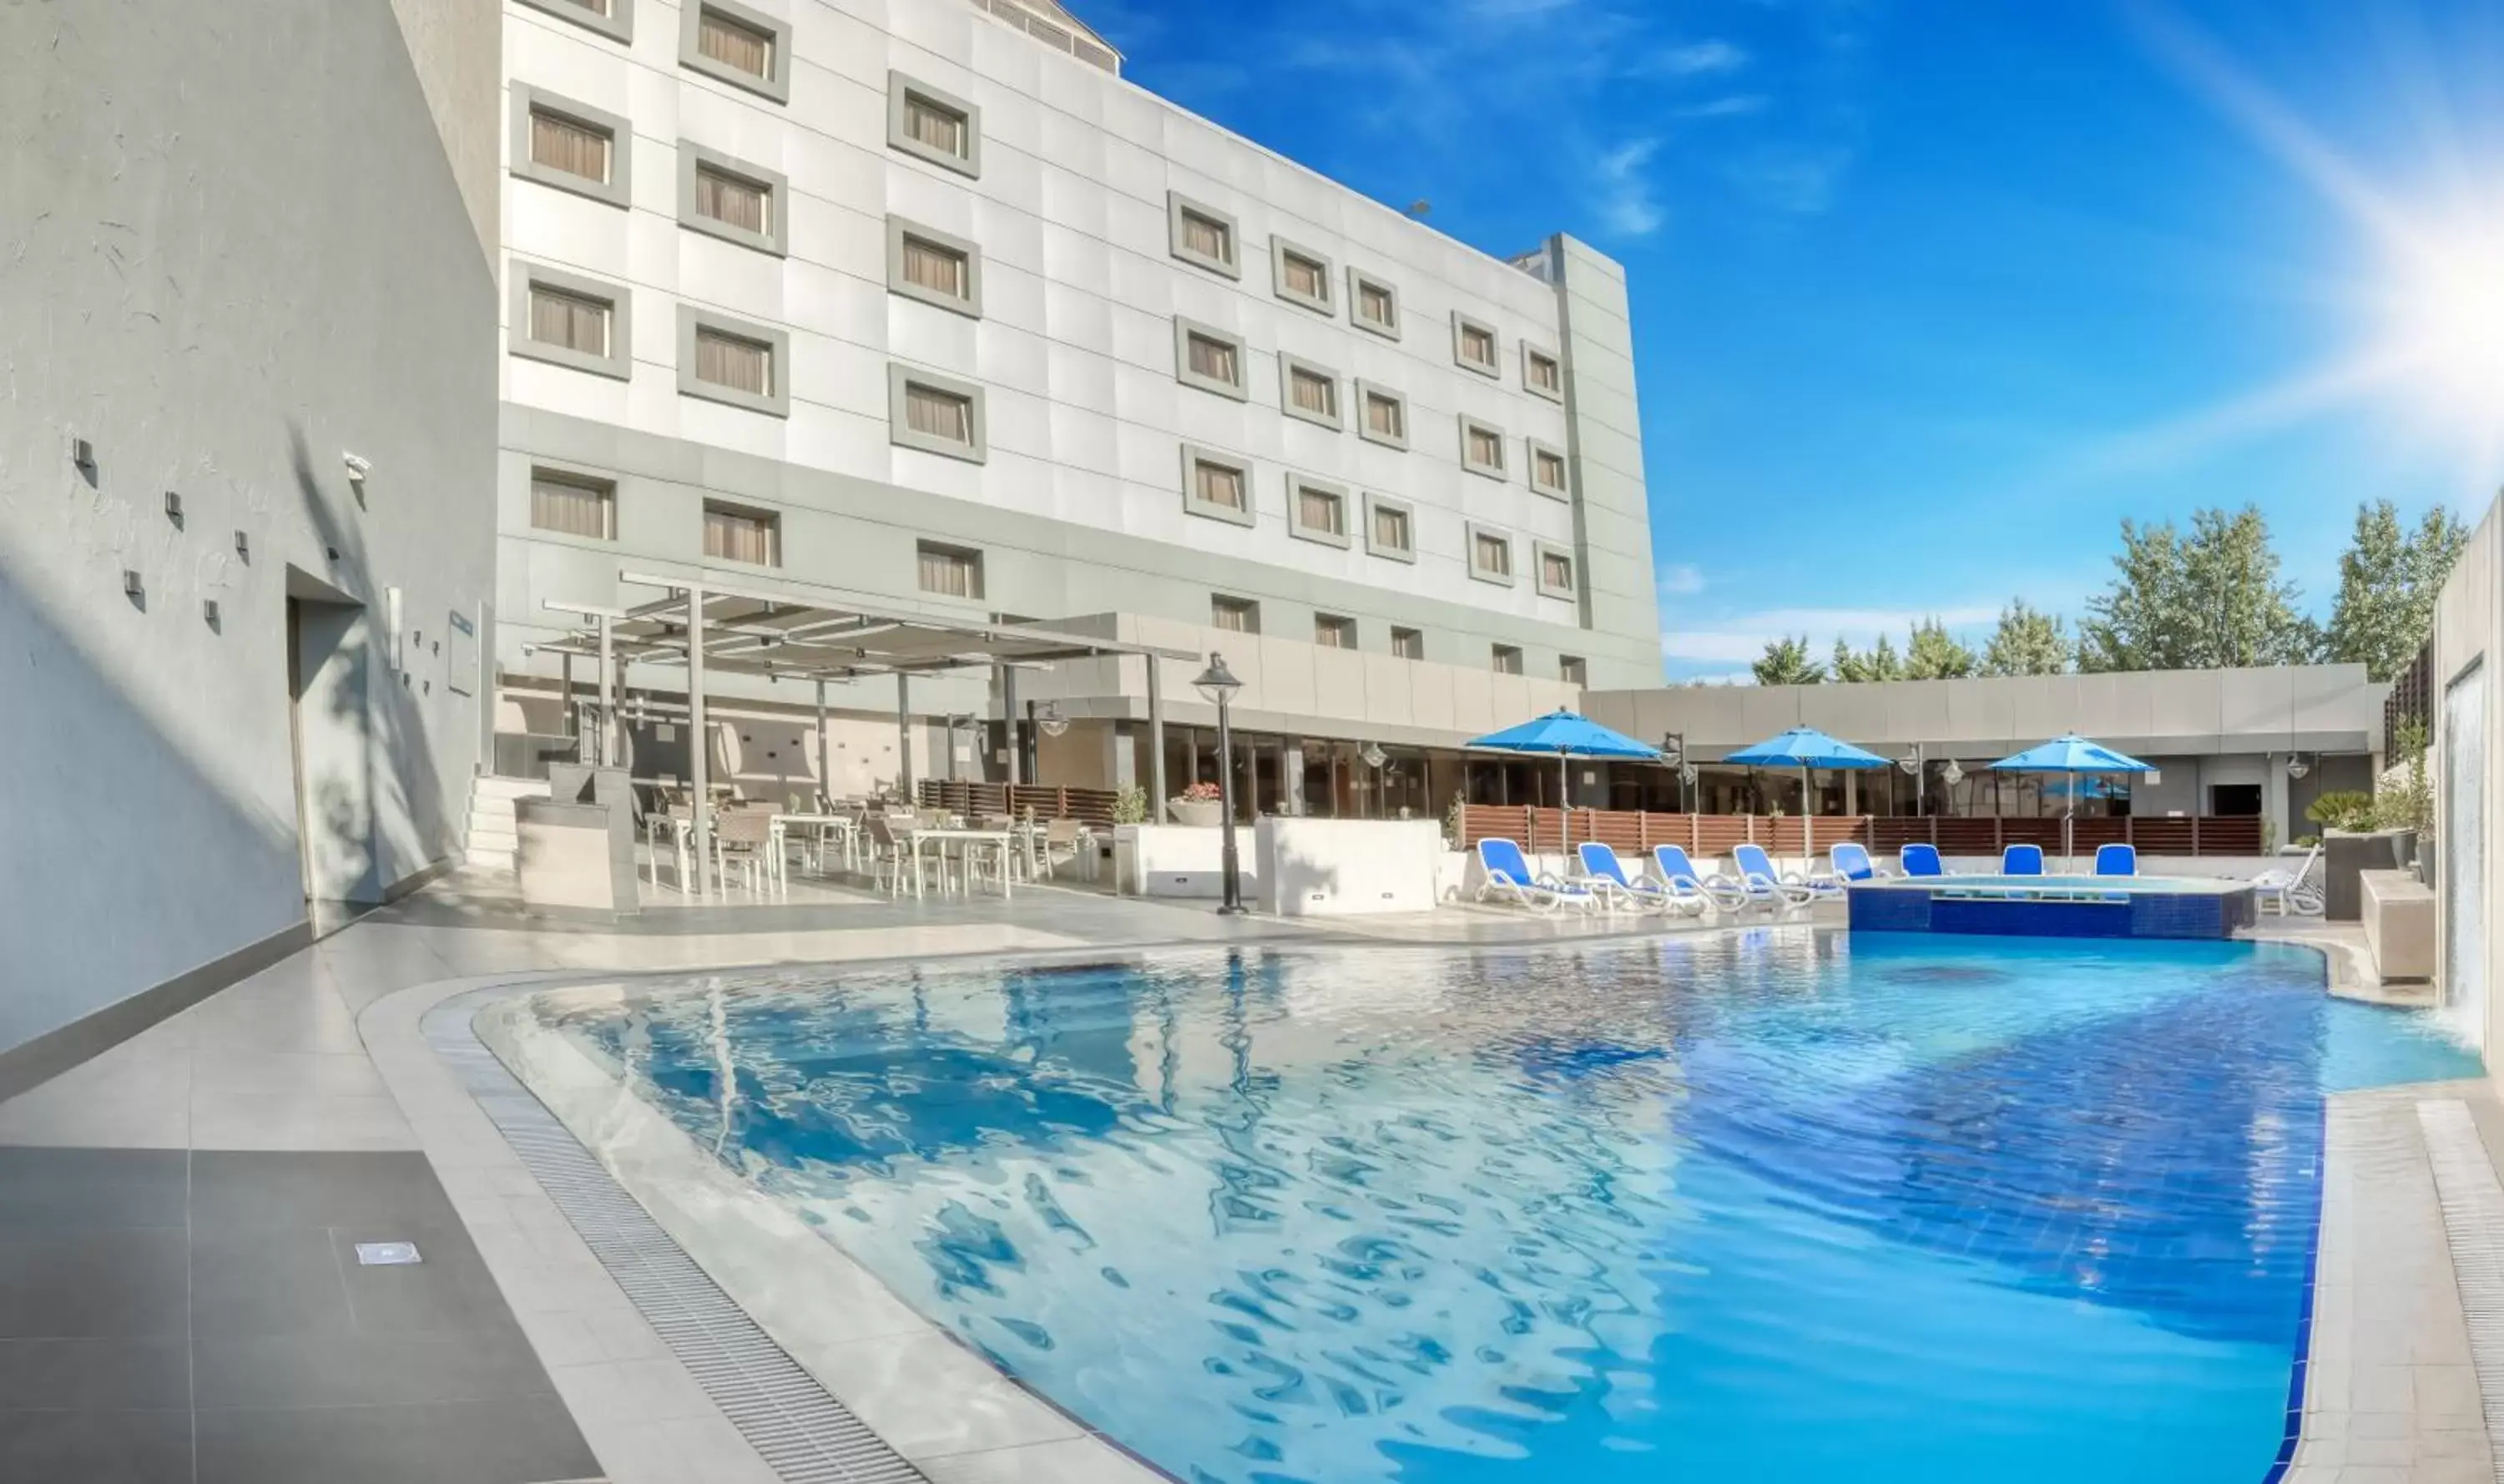 Swimming Pool in Geneva Hotel